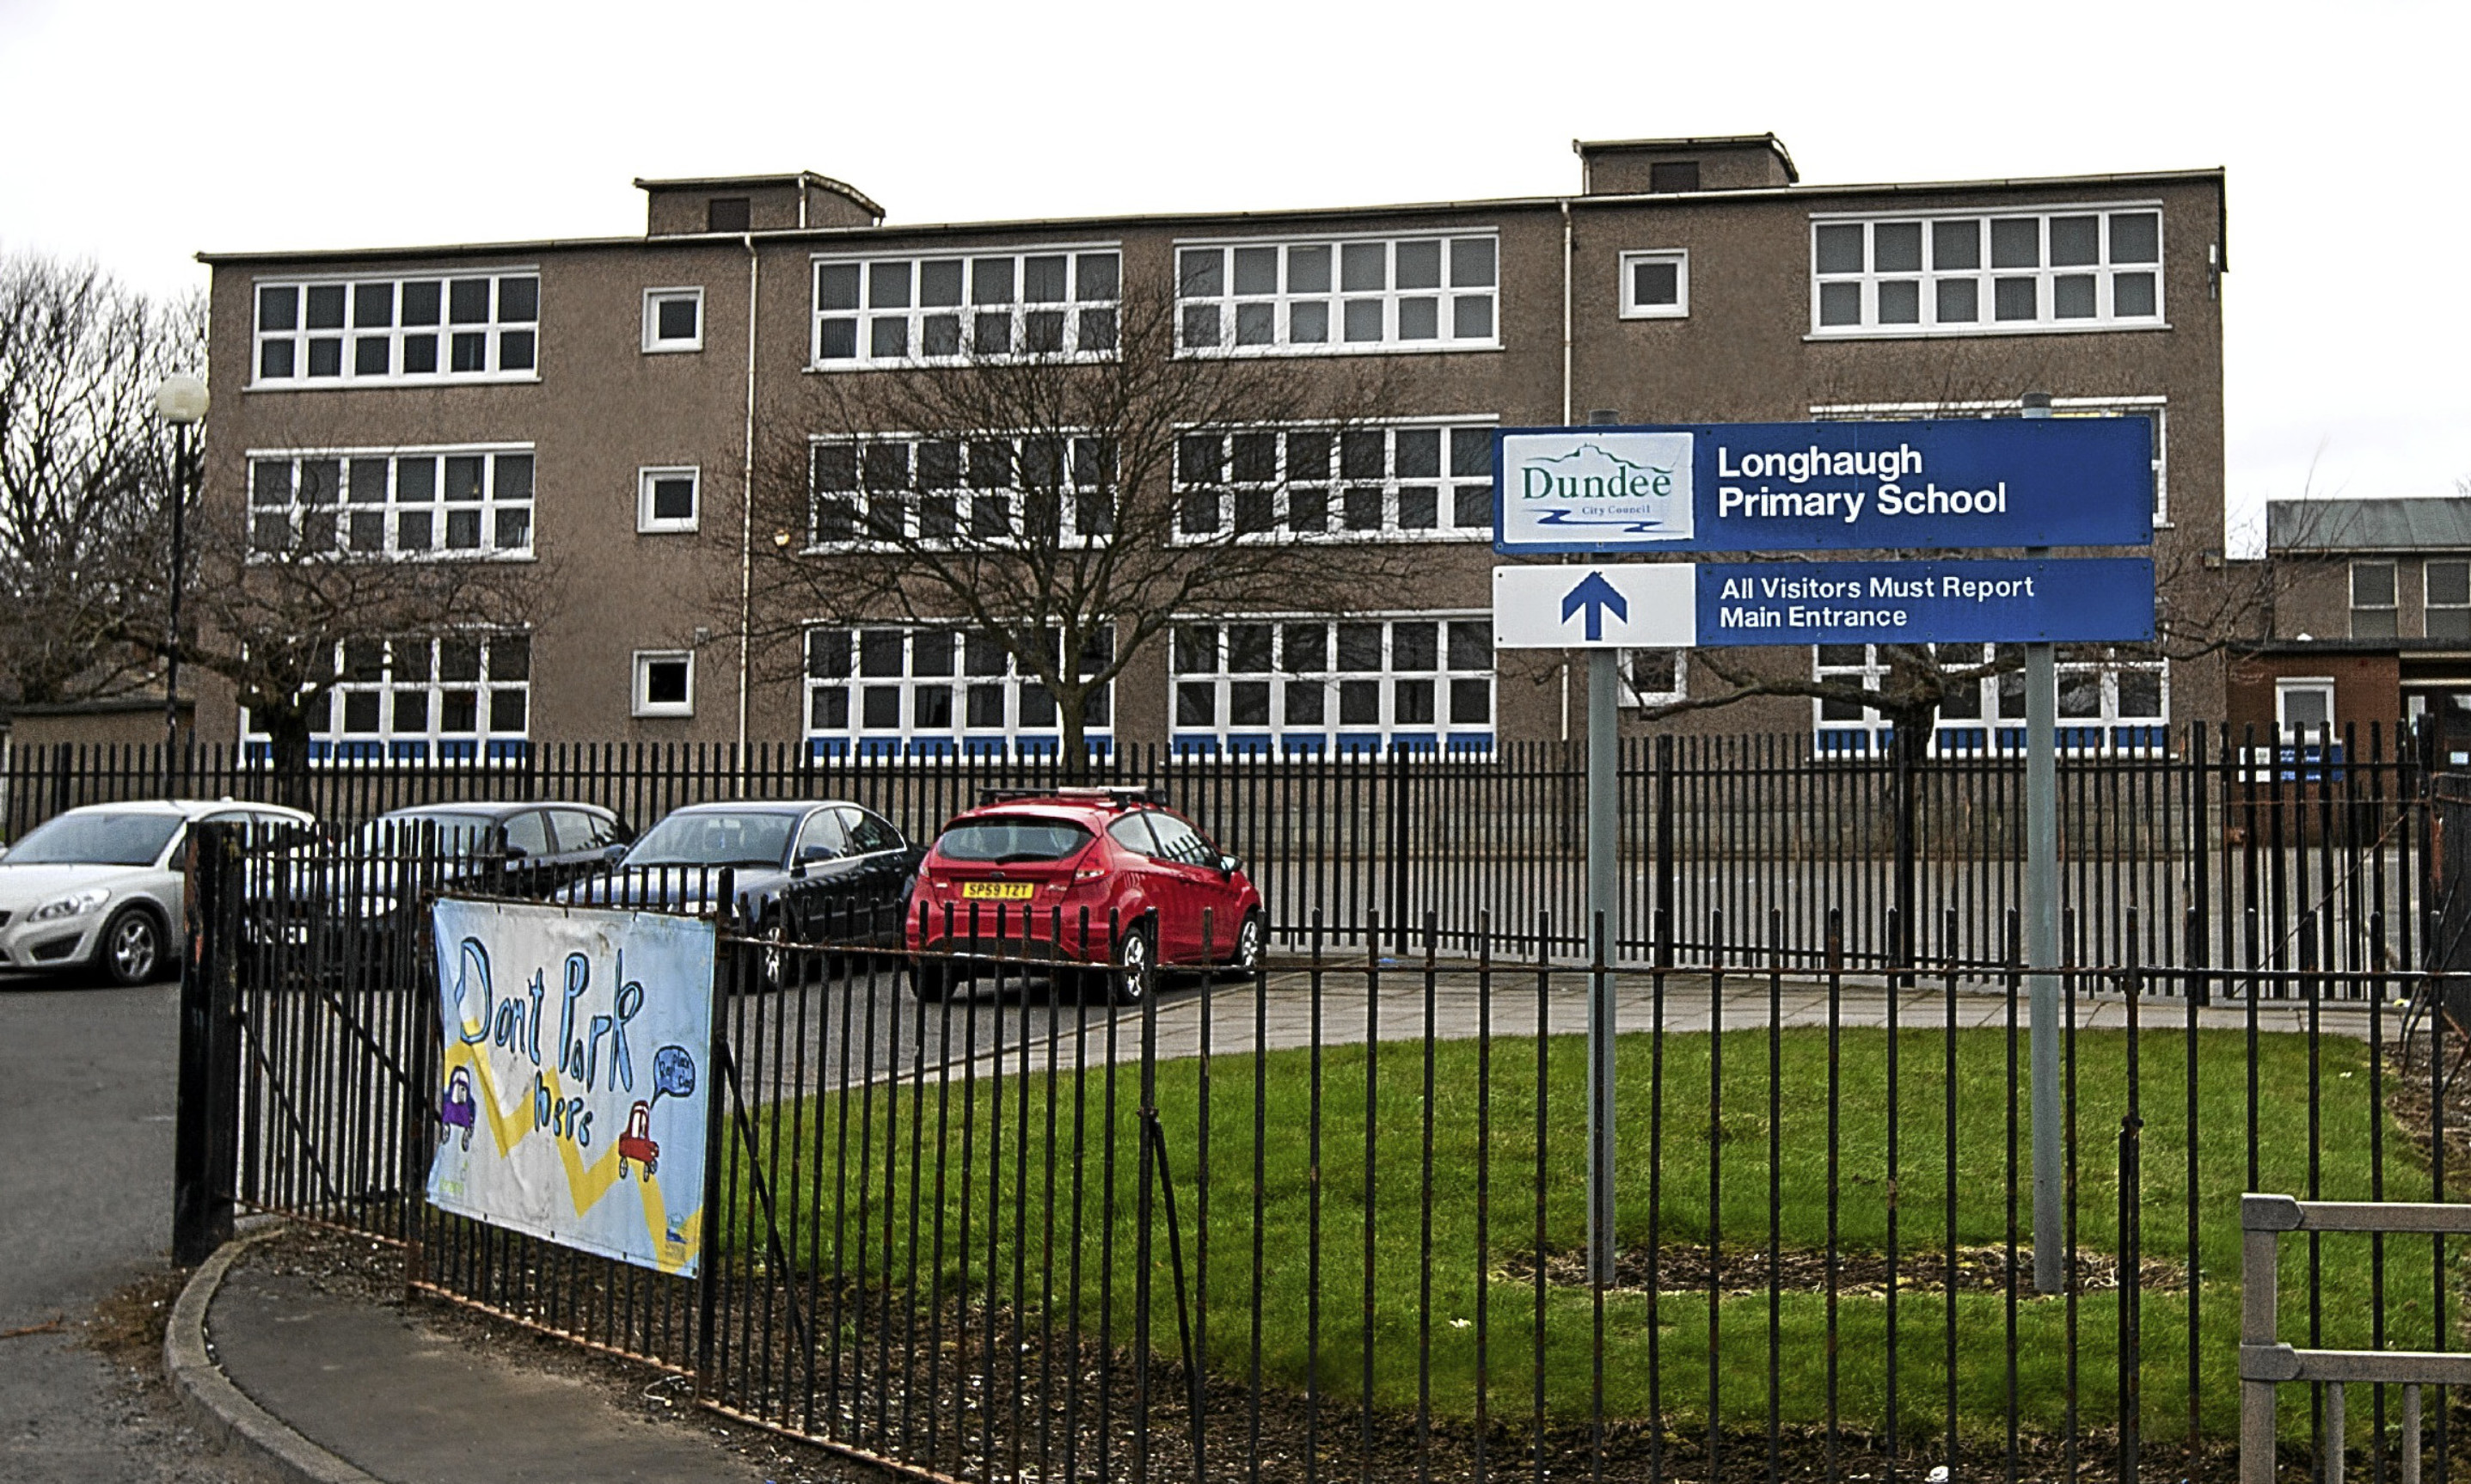 Longhaugh Primary School